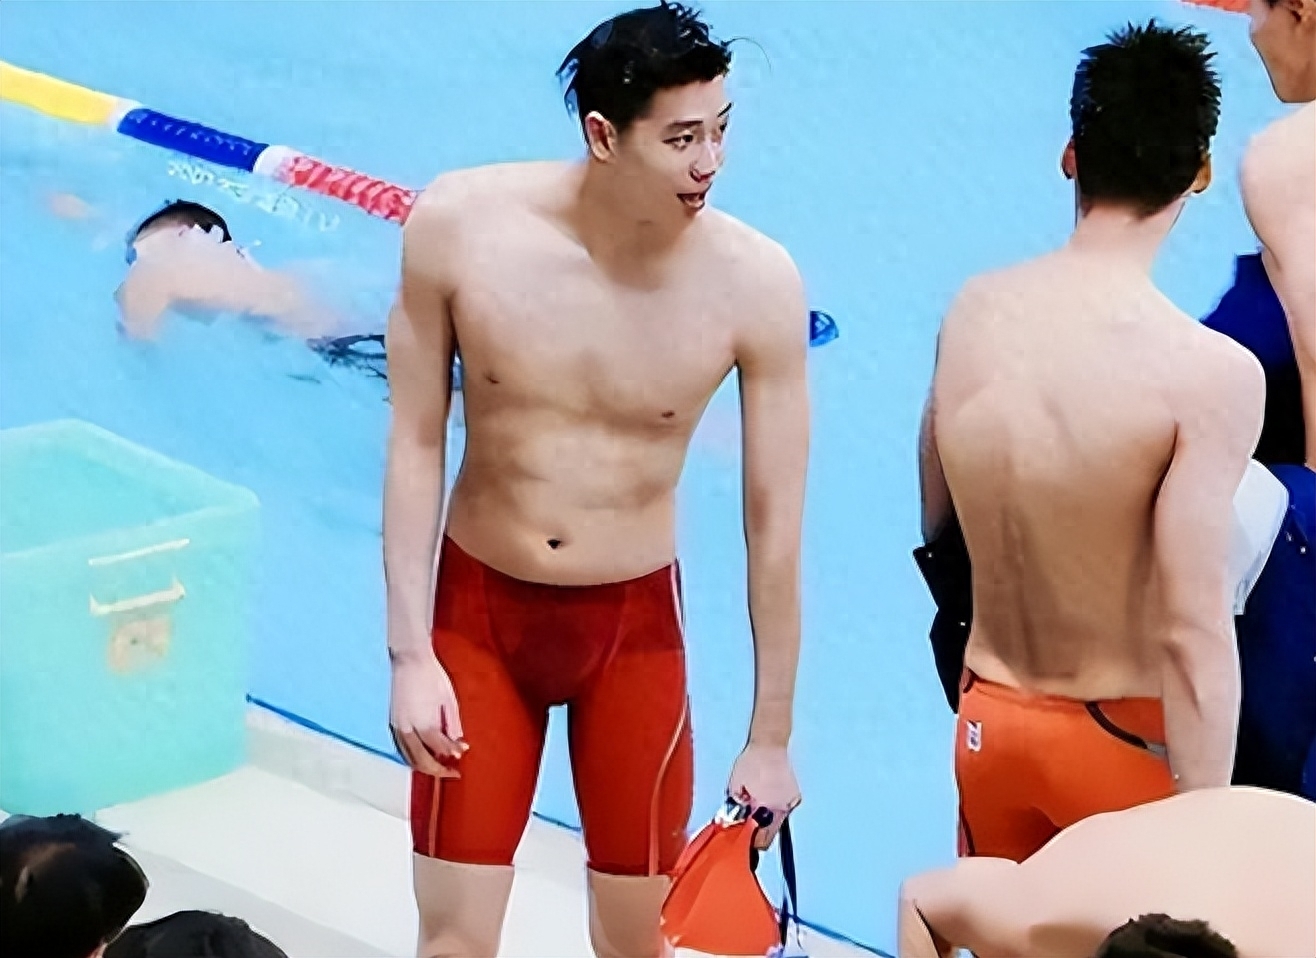 游泳男运动员身材图片